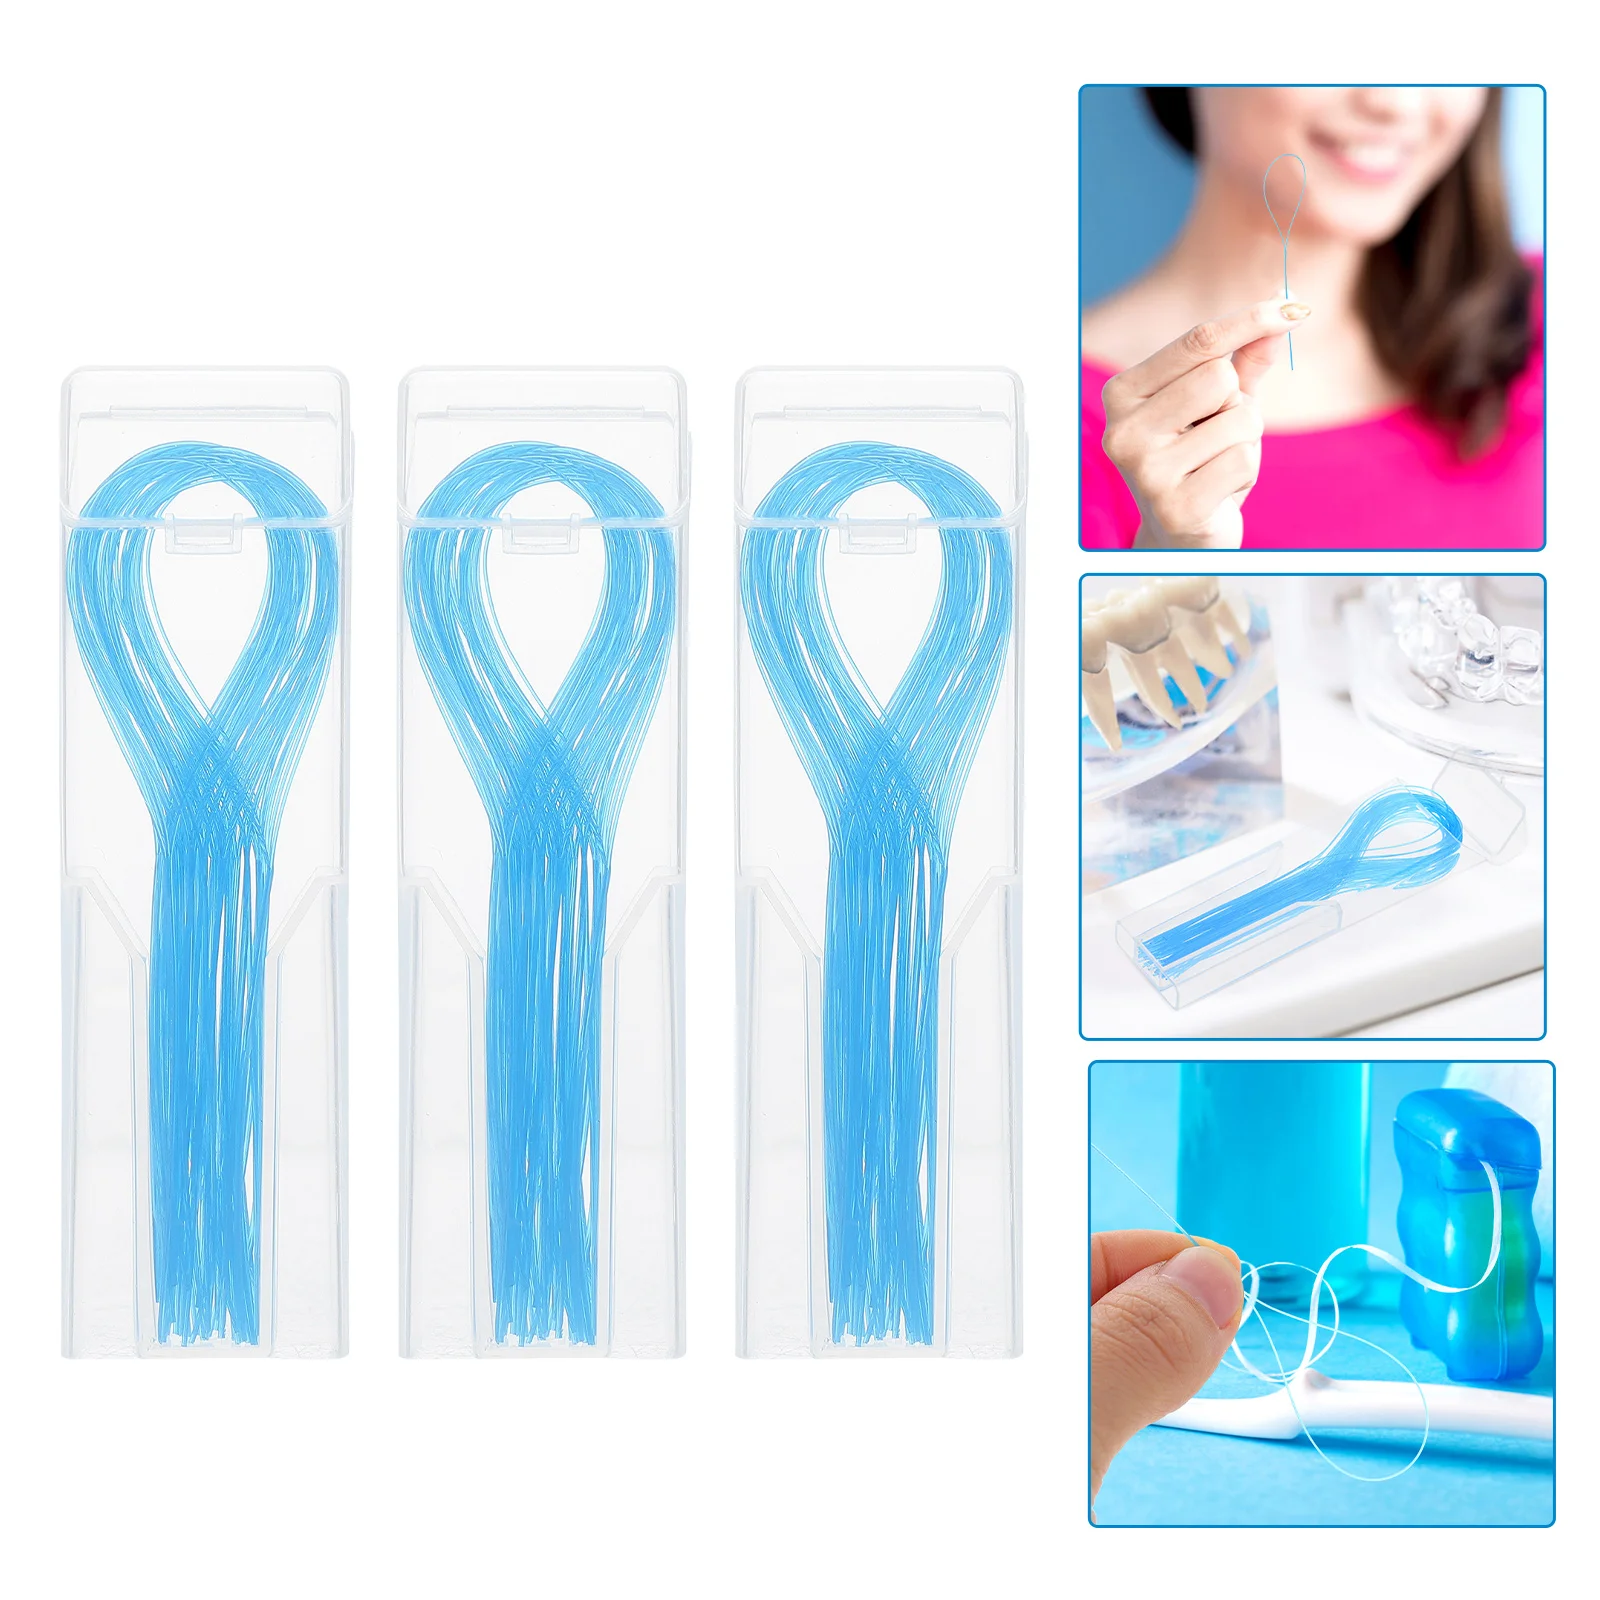 

150 Pcs Dental Floss Flossers Bridges Threader Brace Guide Nylon Household Threaders Portable Braces